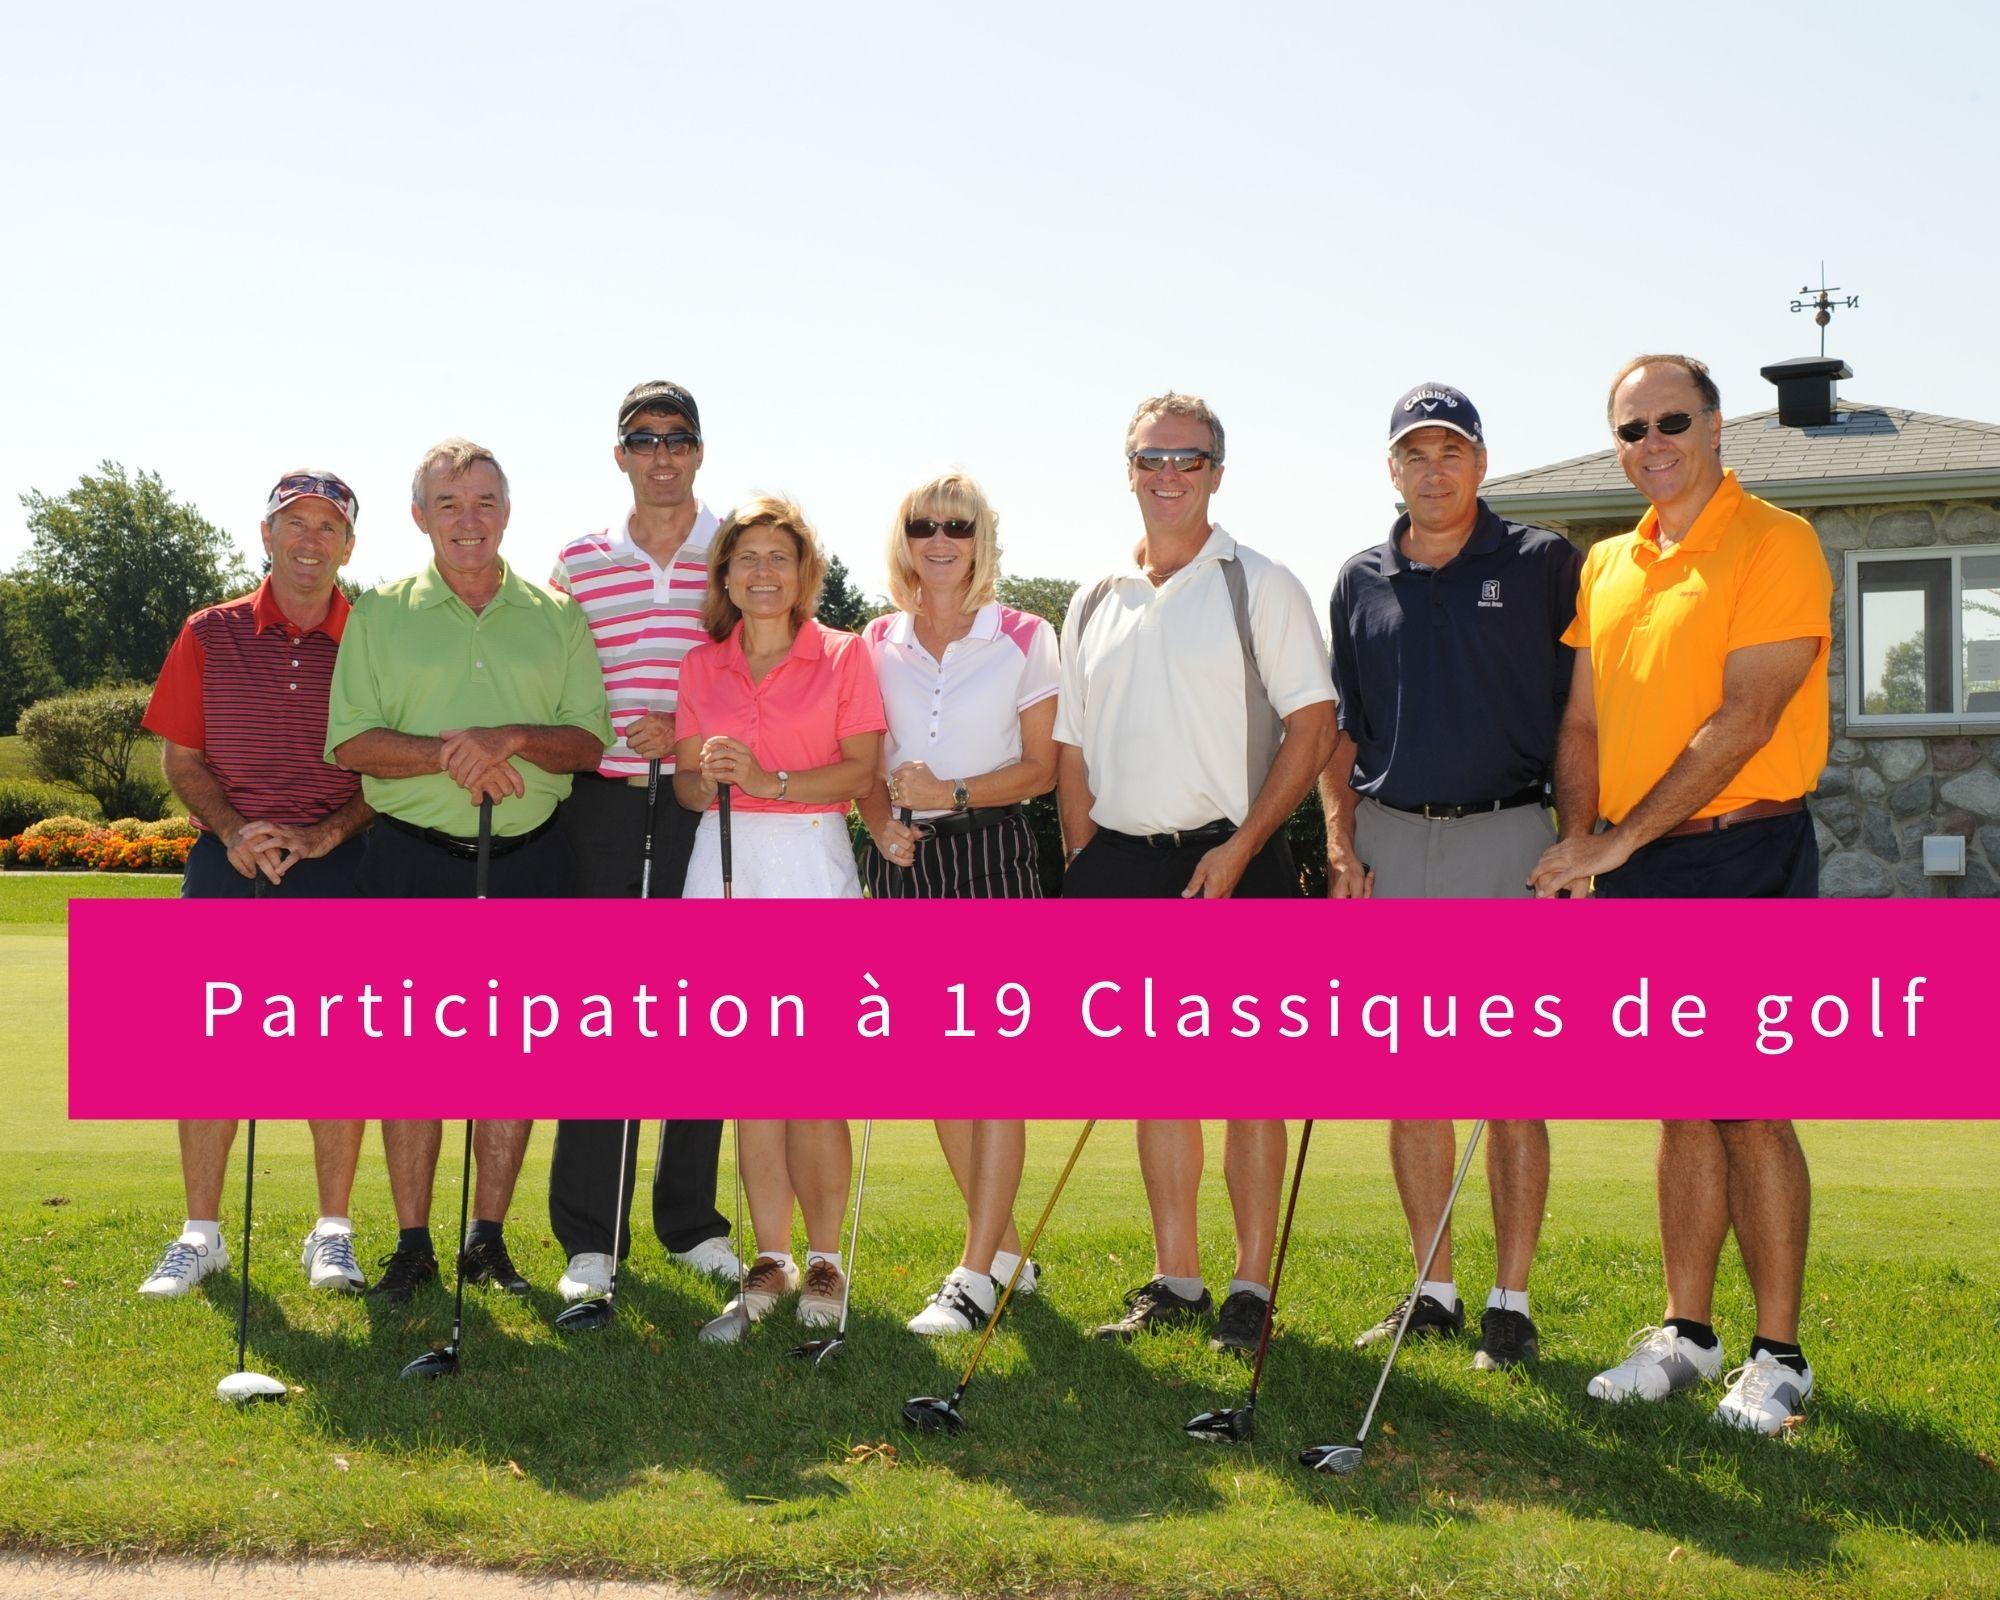 CEZinc-Classique-Golf-2012-Fondation-H%C3%B4pital-Suro%C3%AEt-2.jpg#asset:1713